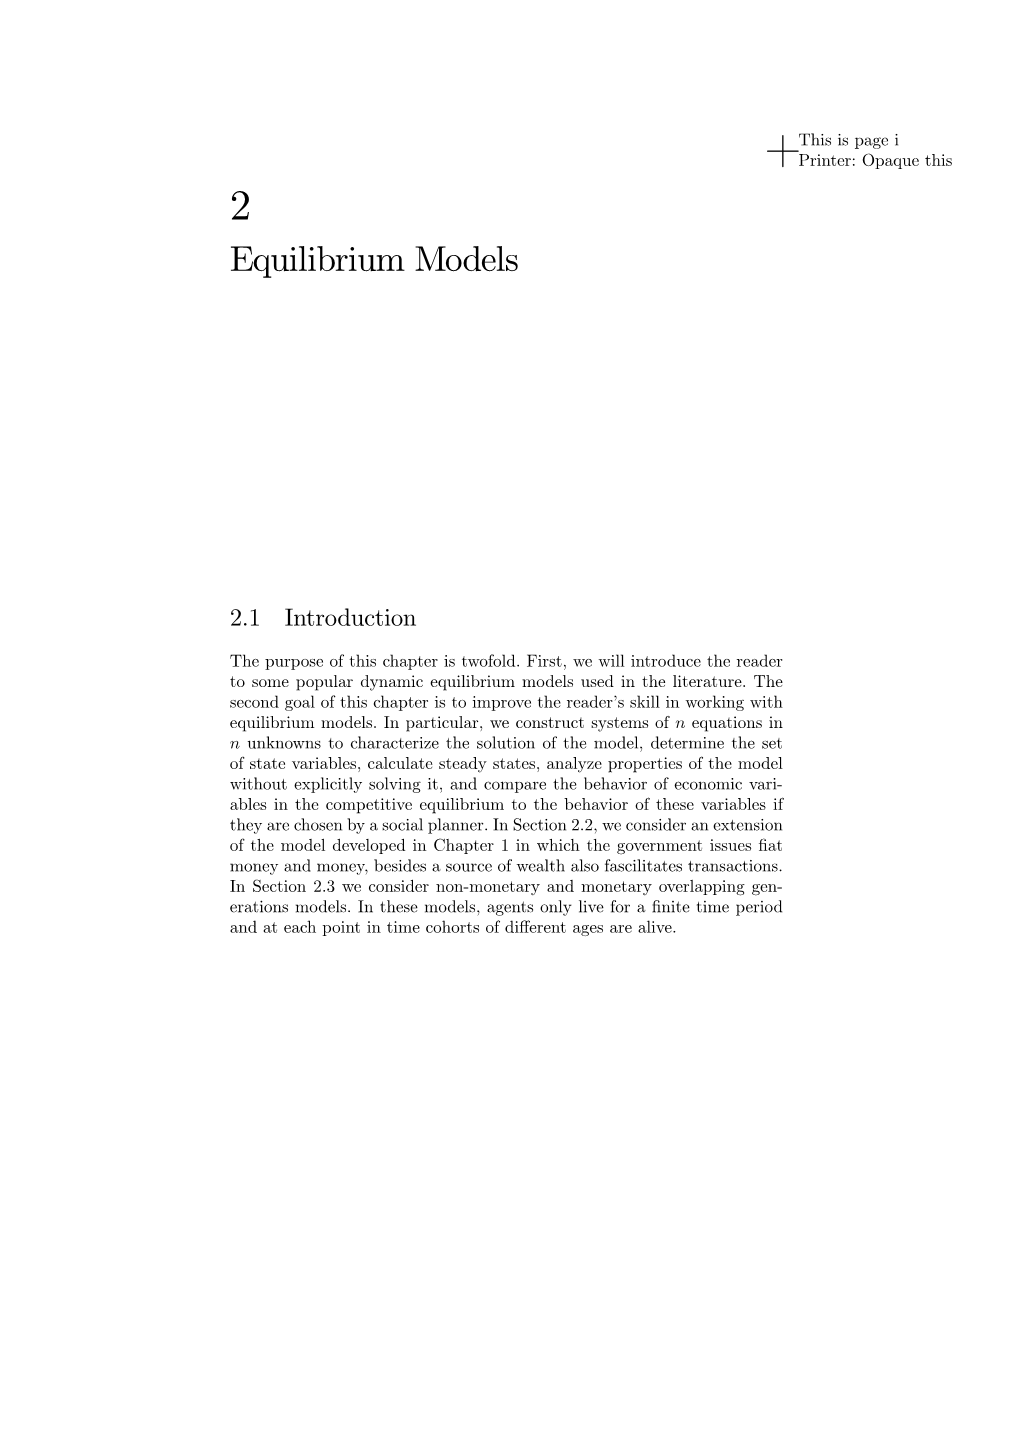 Equilibrium Models